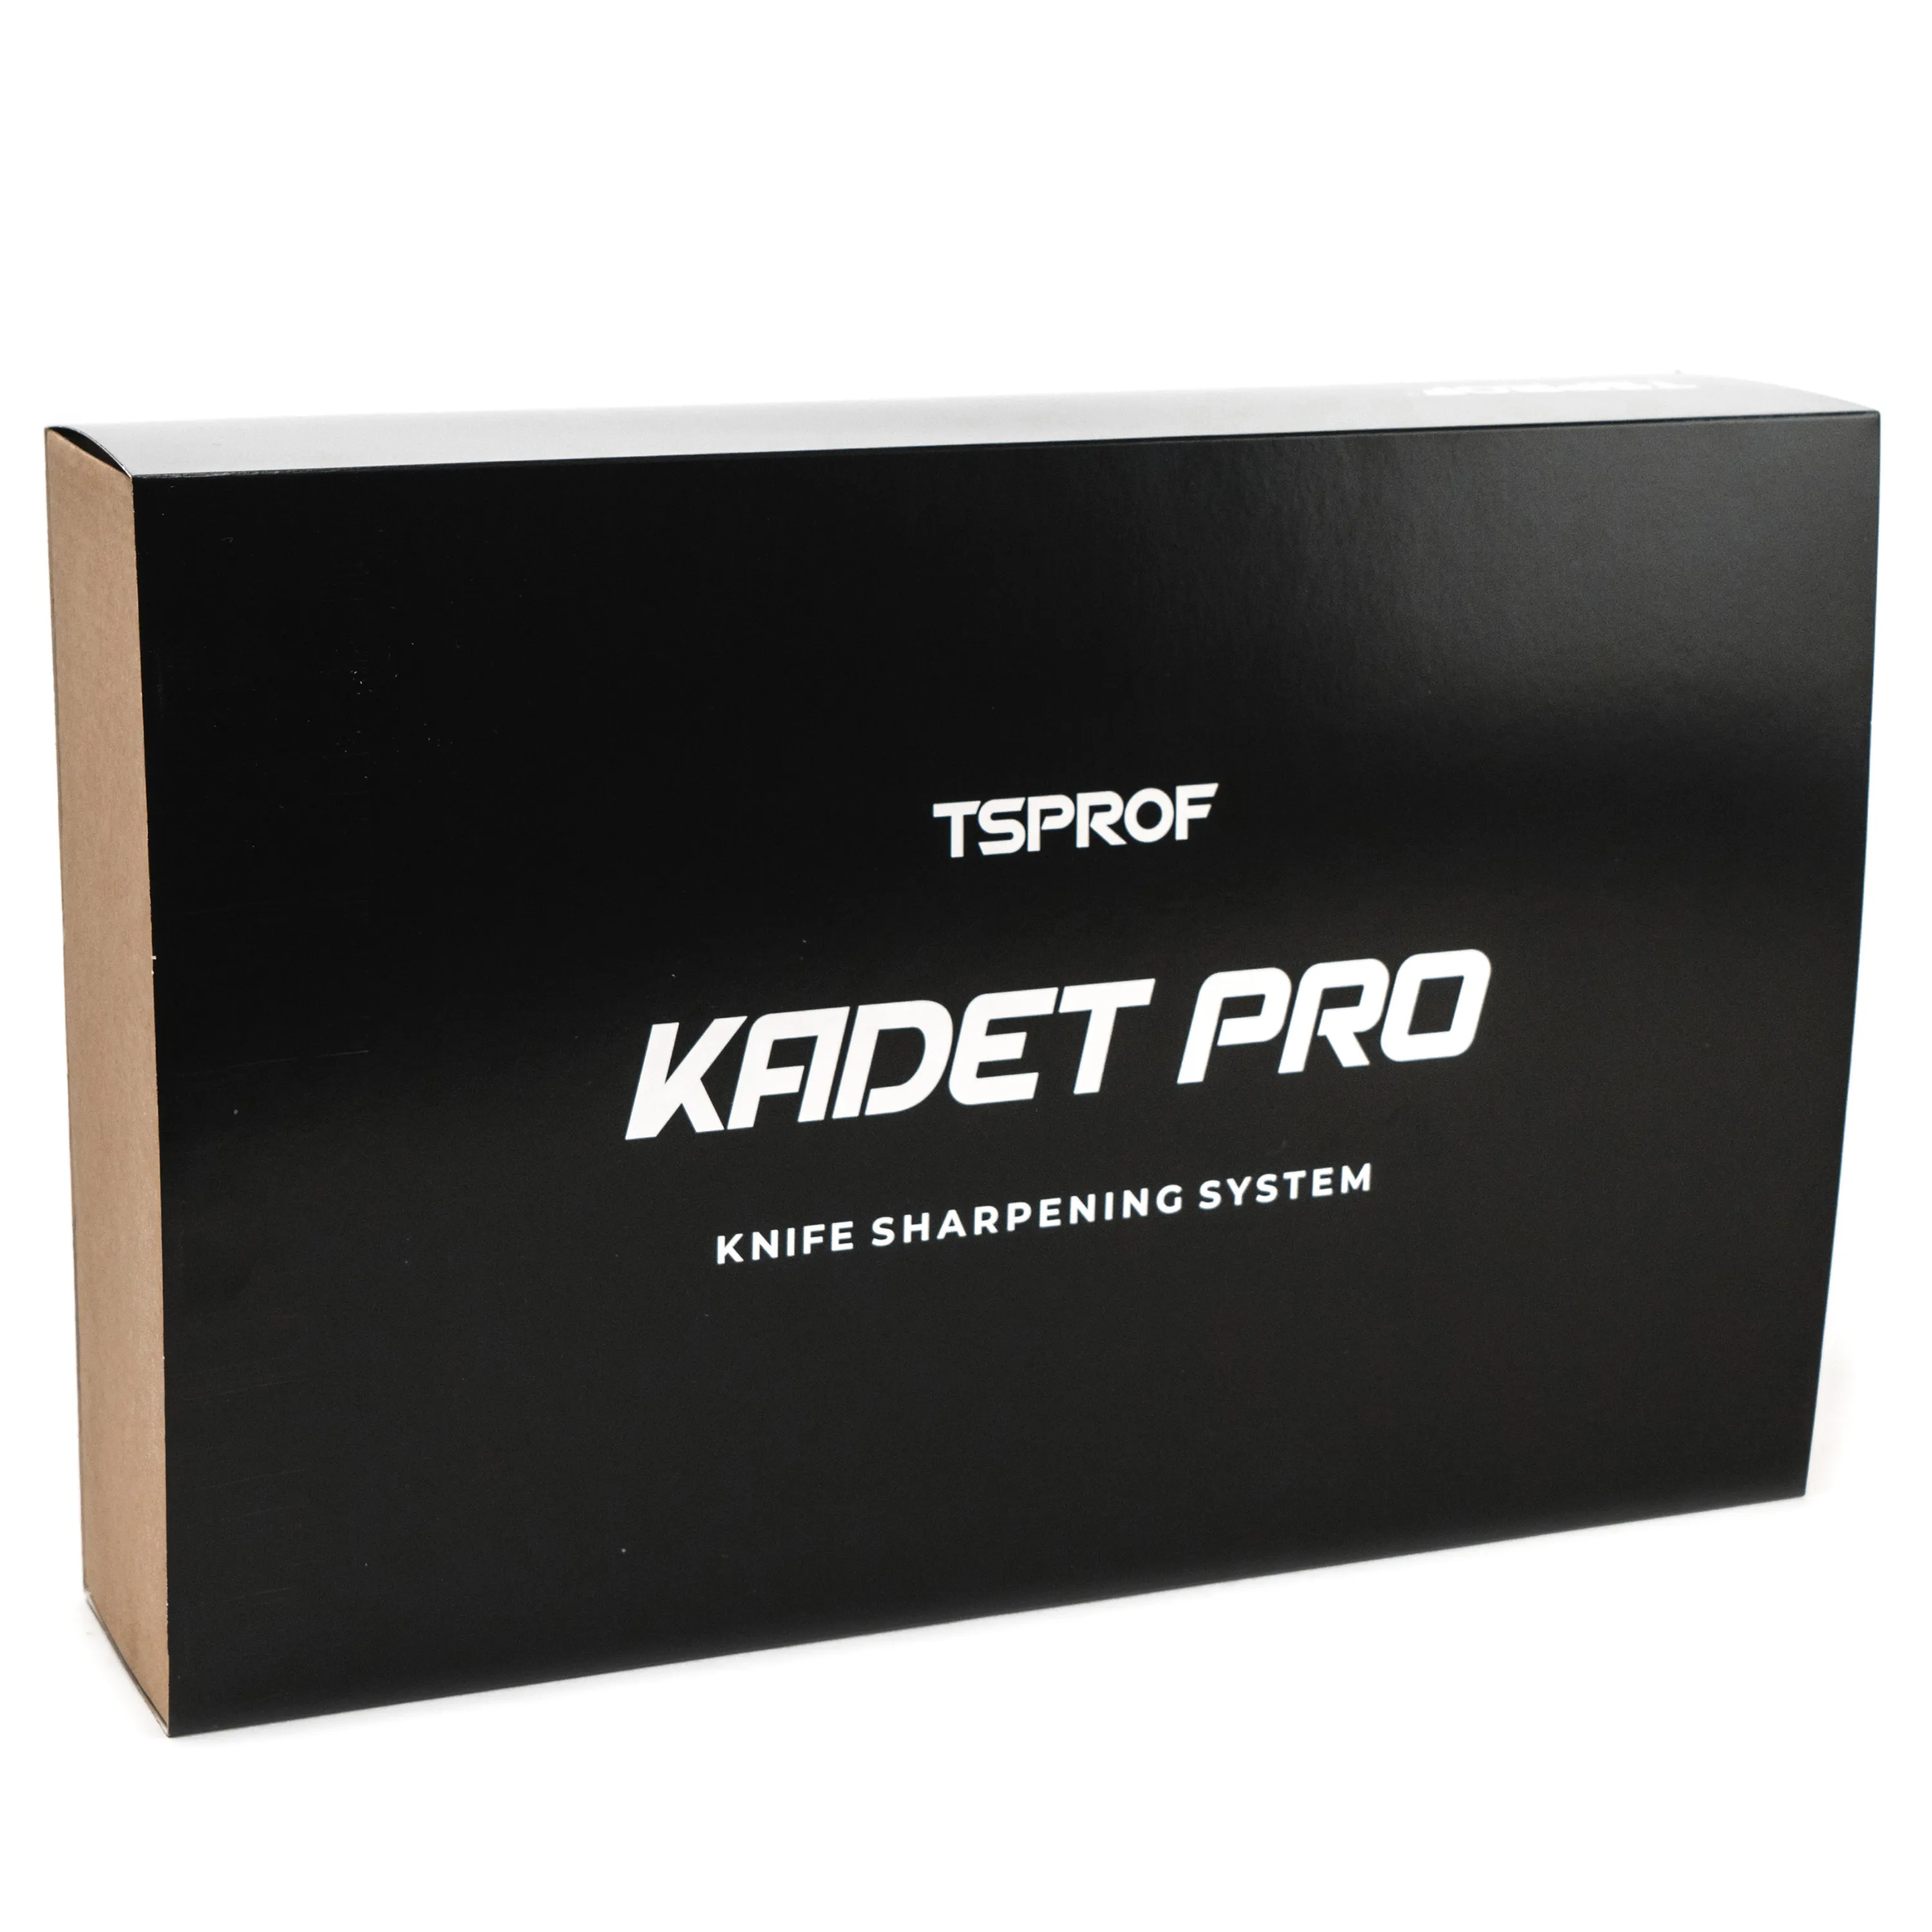 фото Заточное устройство TSPROF Kadet Pro, Версия T (без покрытия) на ytprof.ru